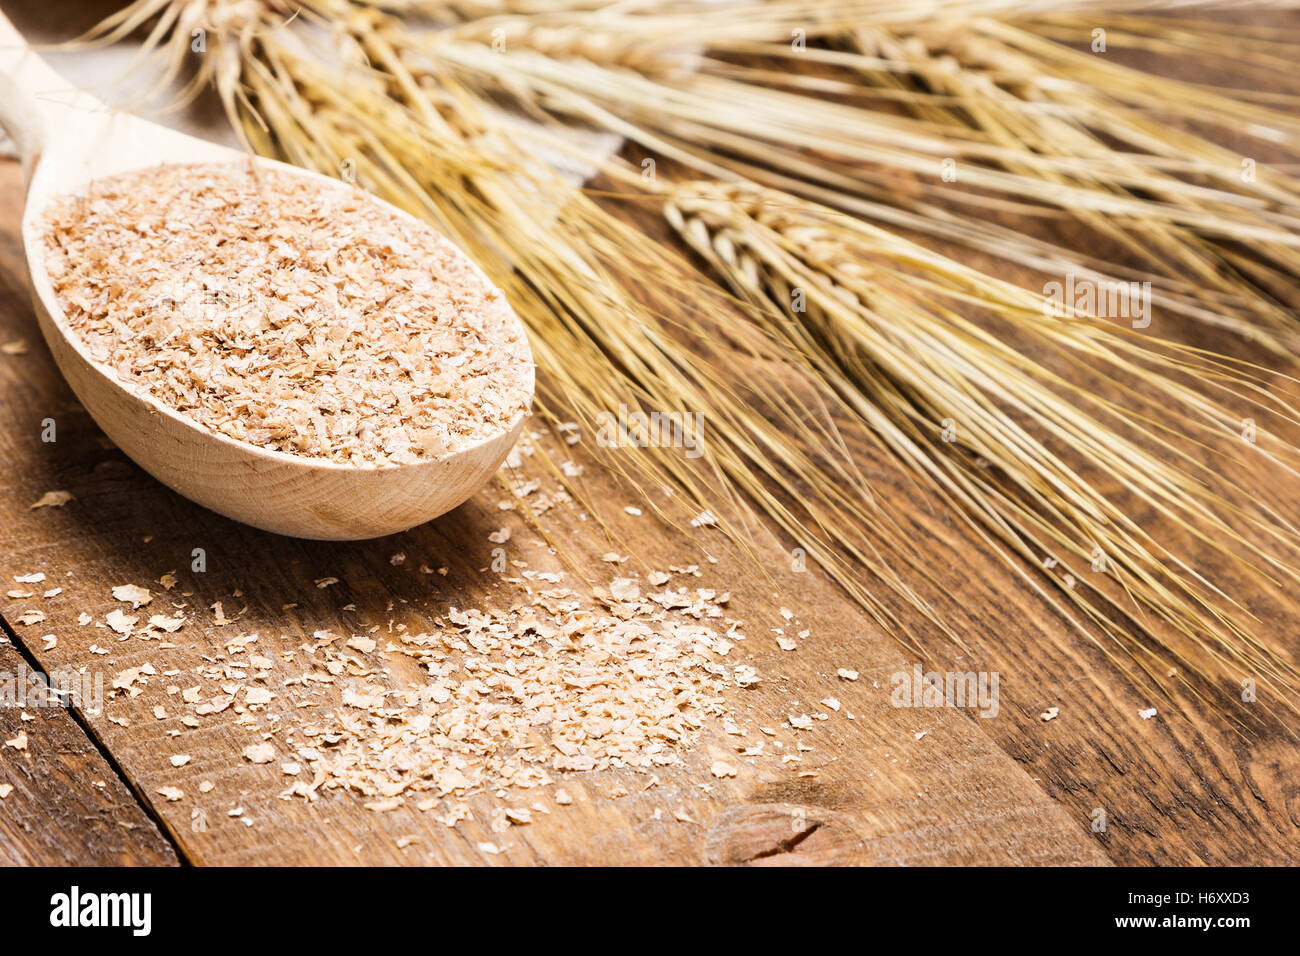 Close-up di crusca di frumento in cucchiaio di legno con spighe di grano. Integratore dietetico per migliorare la digestione. Fonte di fibra dietetica Foto Stock